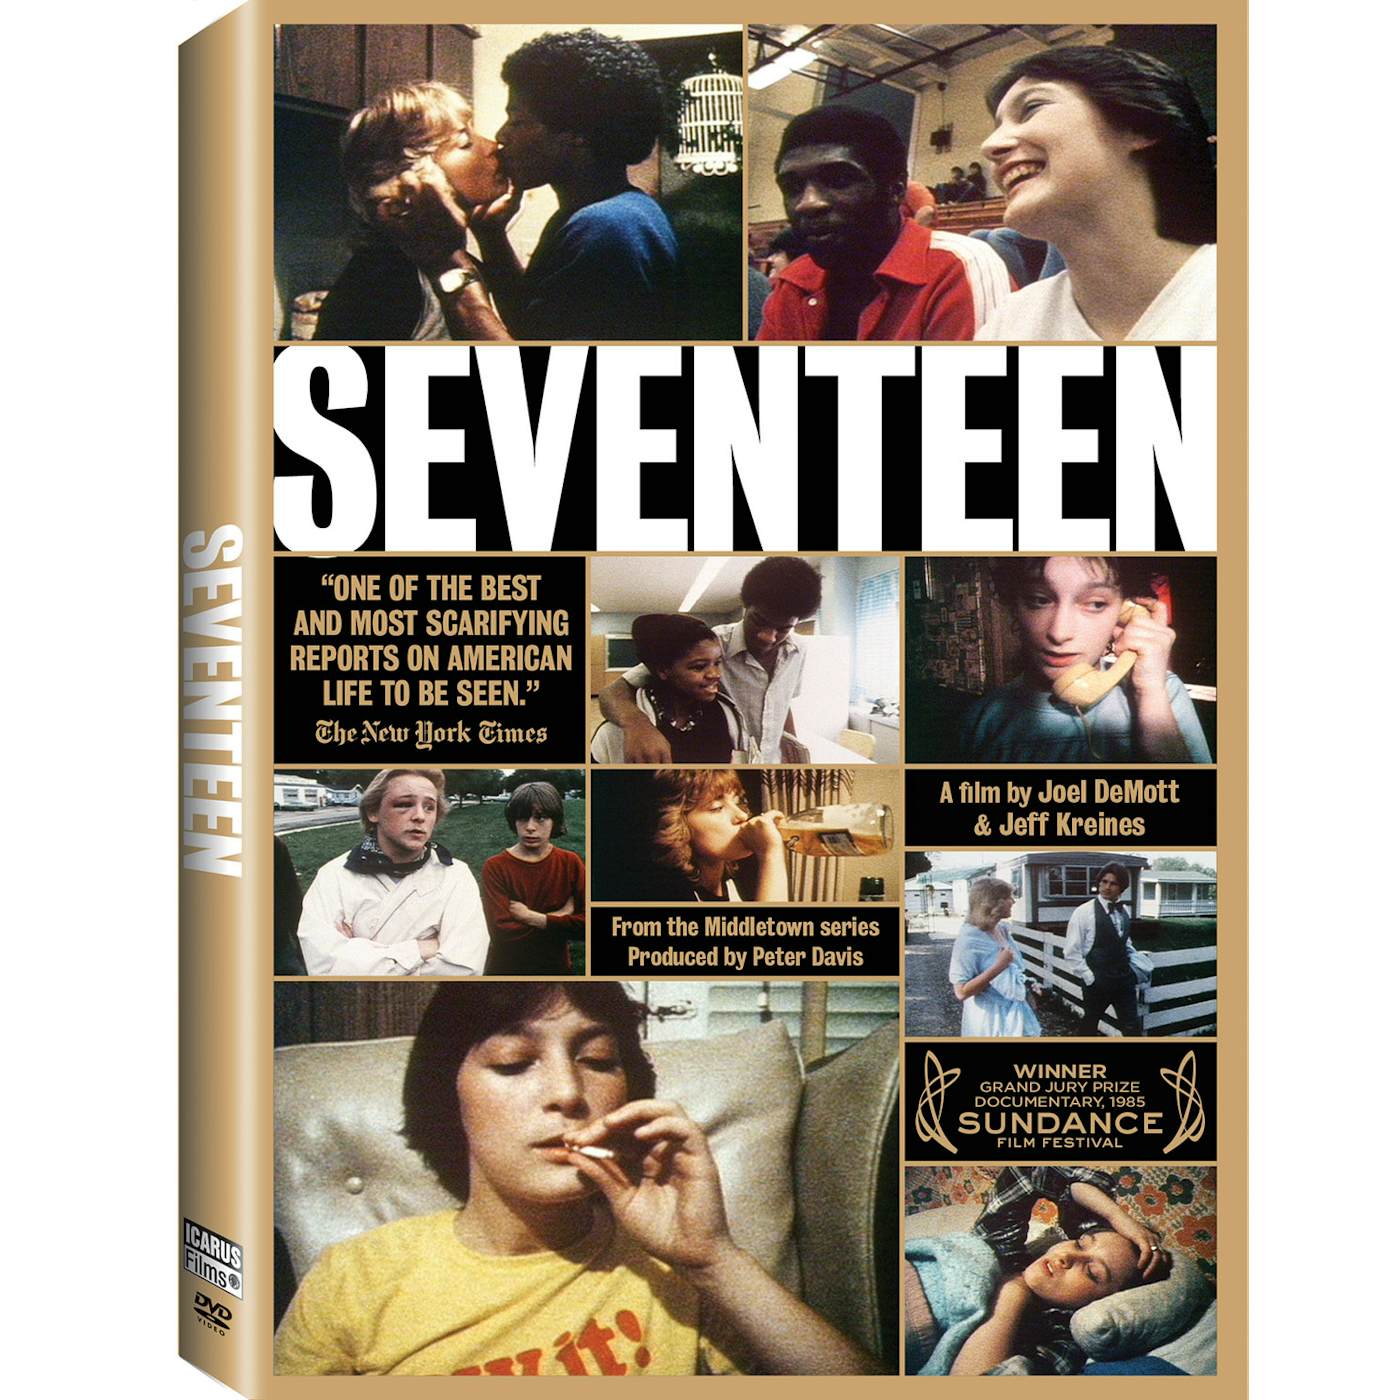 SEVENTEEN DVD